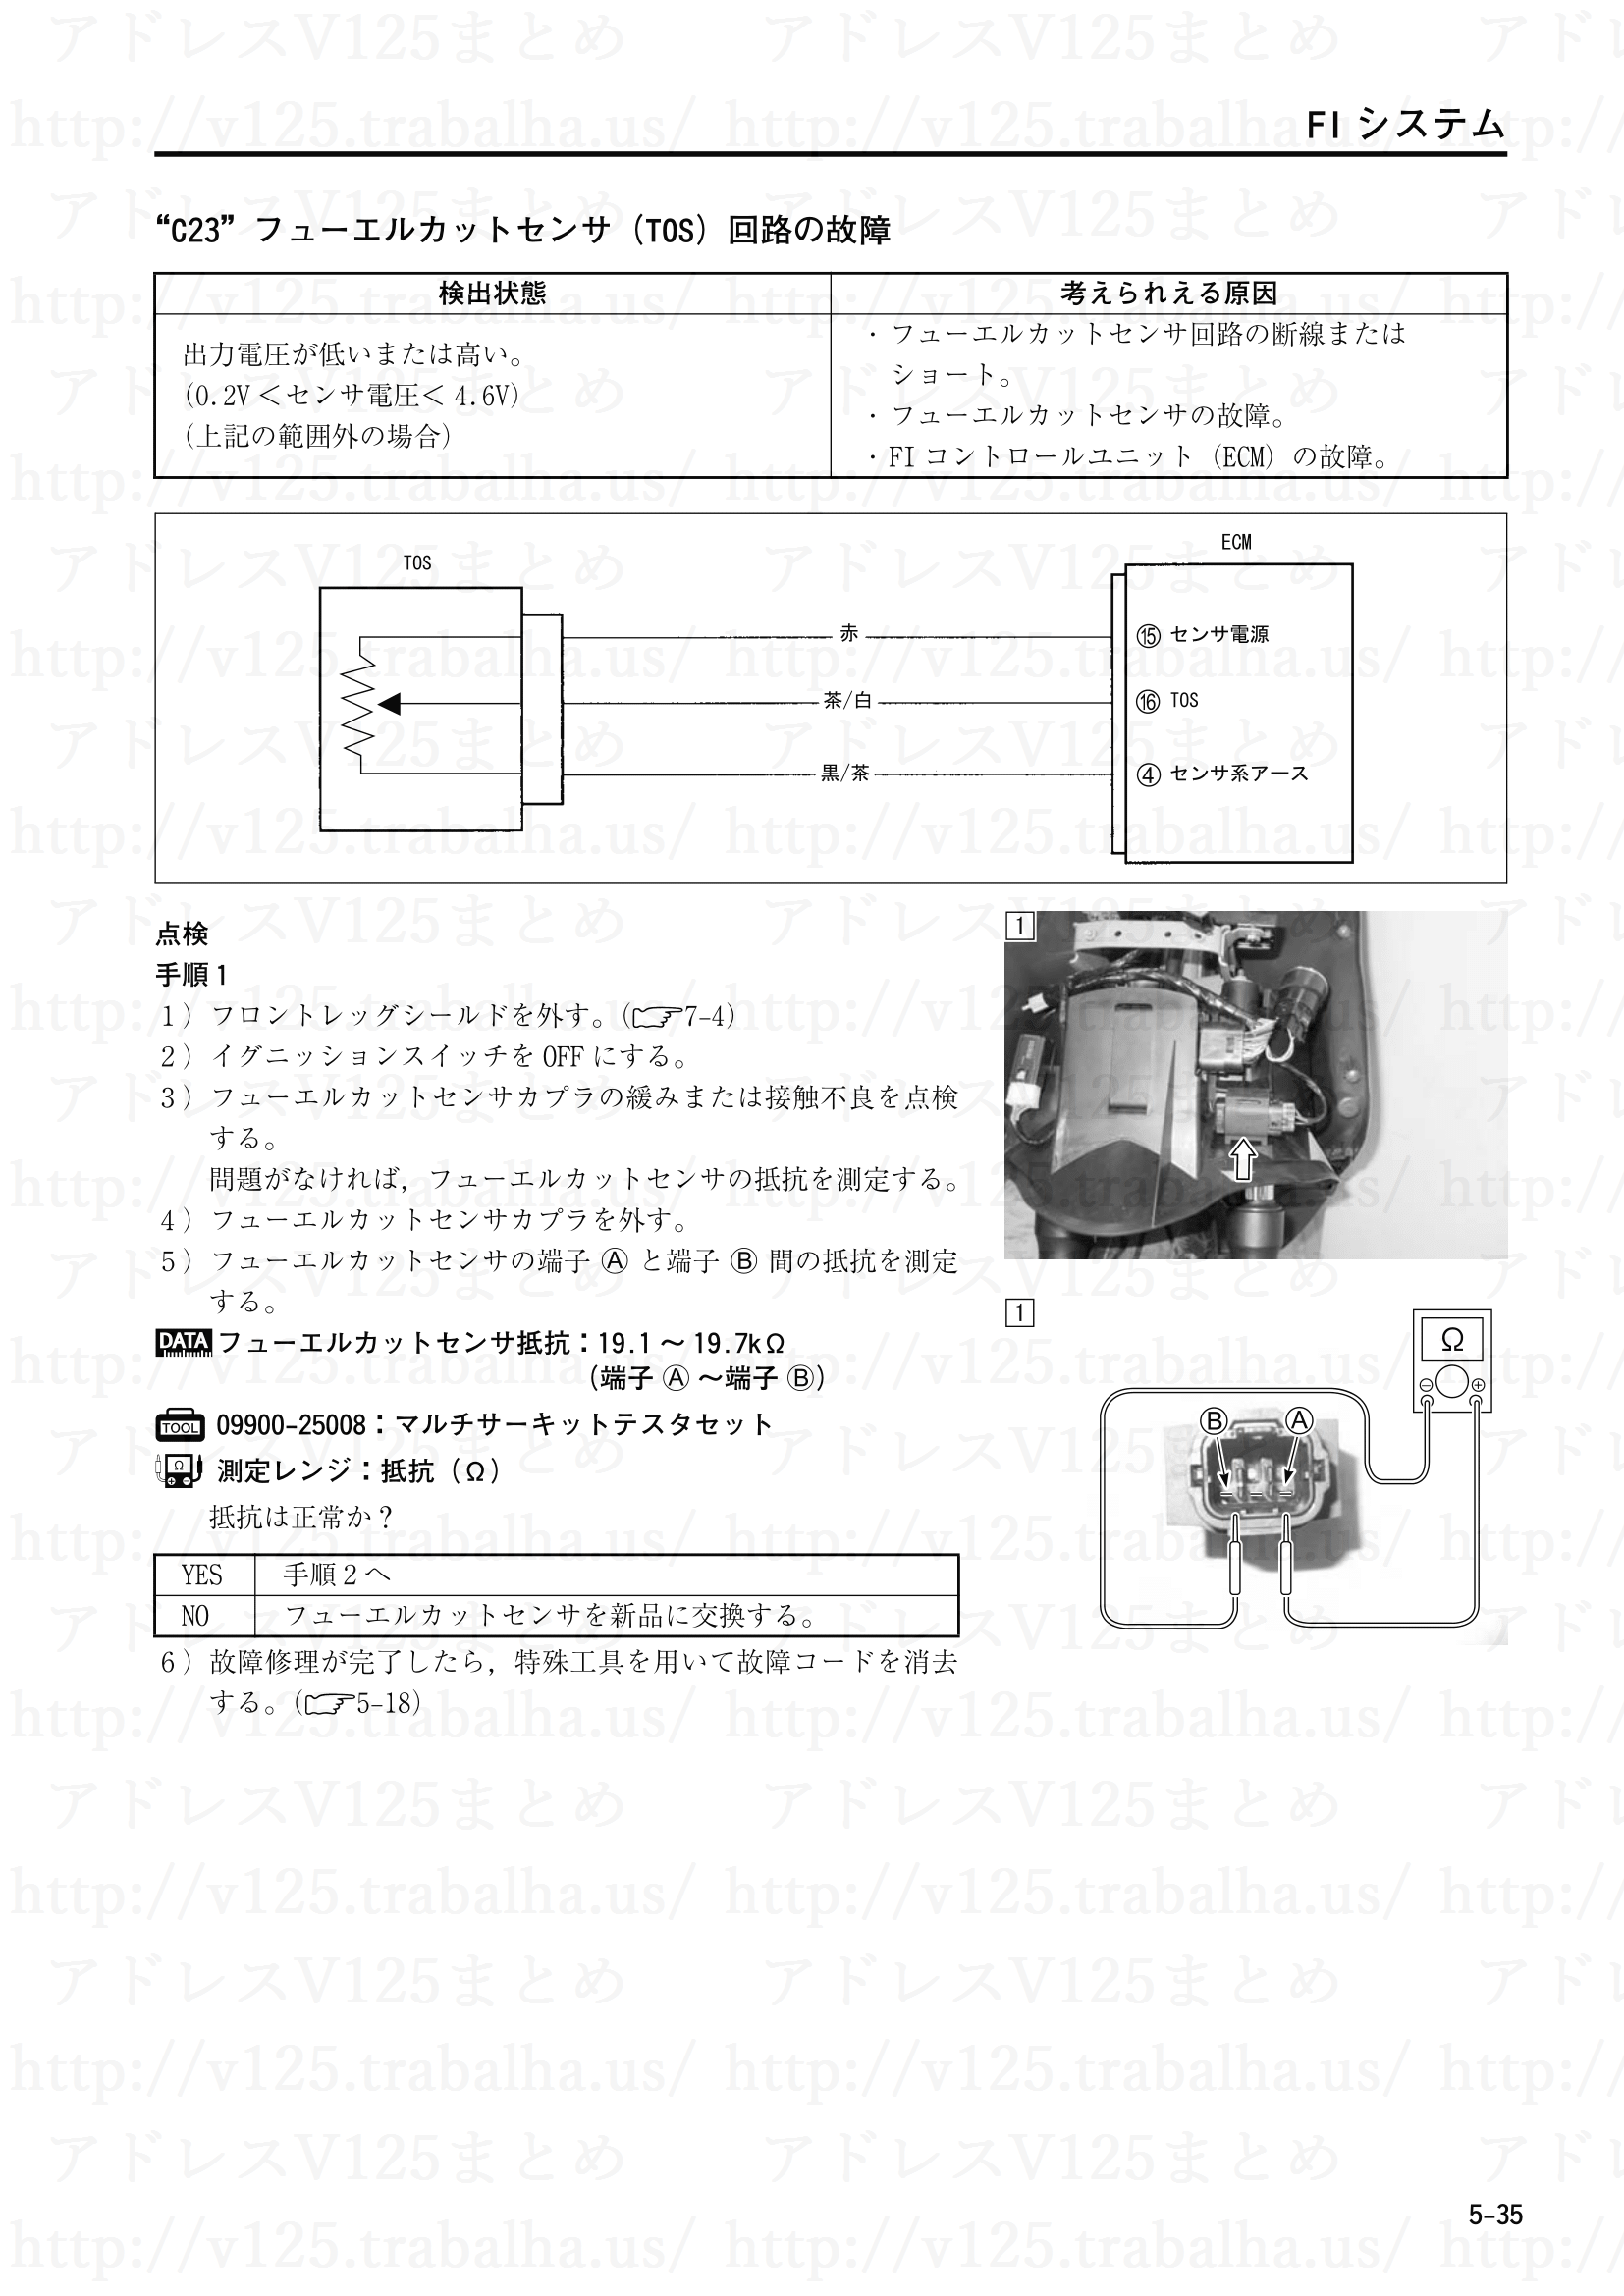 5-35【FIシステム】“C23”フューエルカットセンサ(TOS)回路の故障1